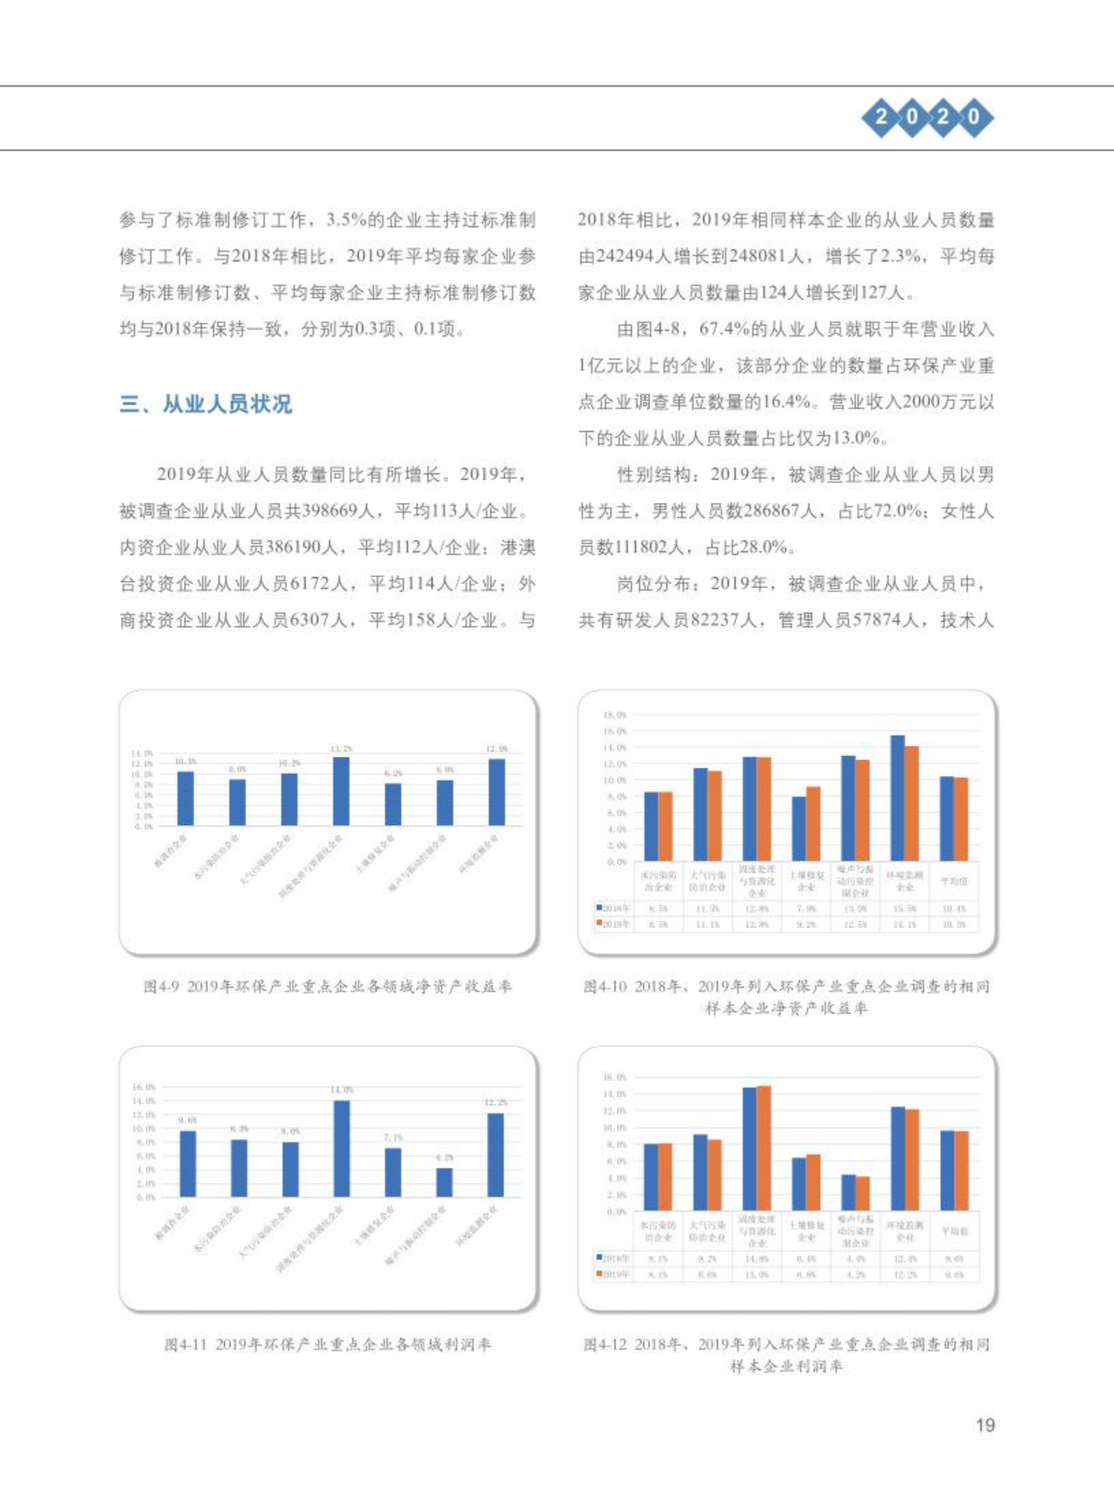 【2020】中国环保产业发展状况报告_20.png